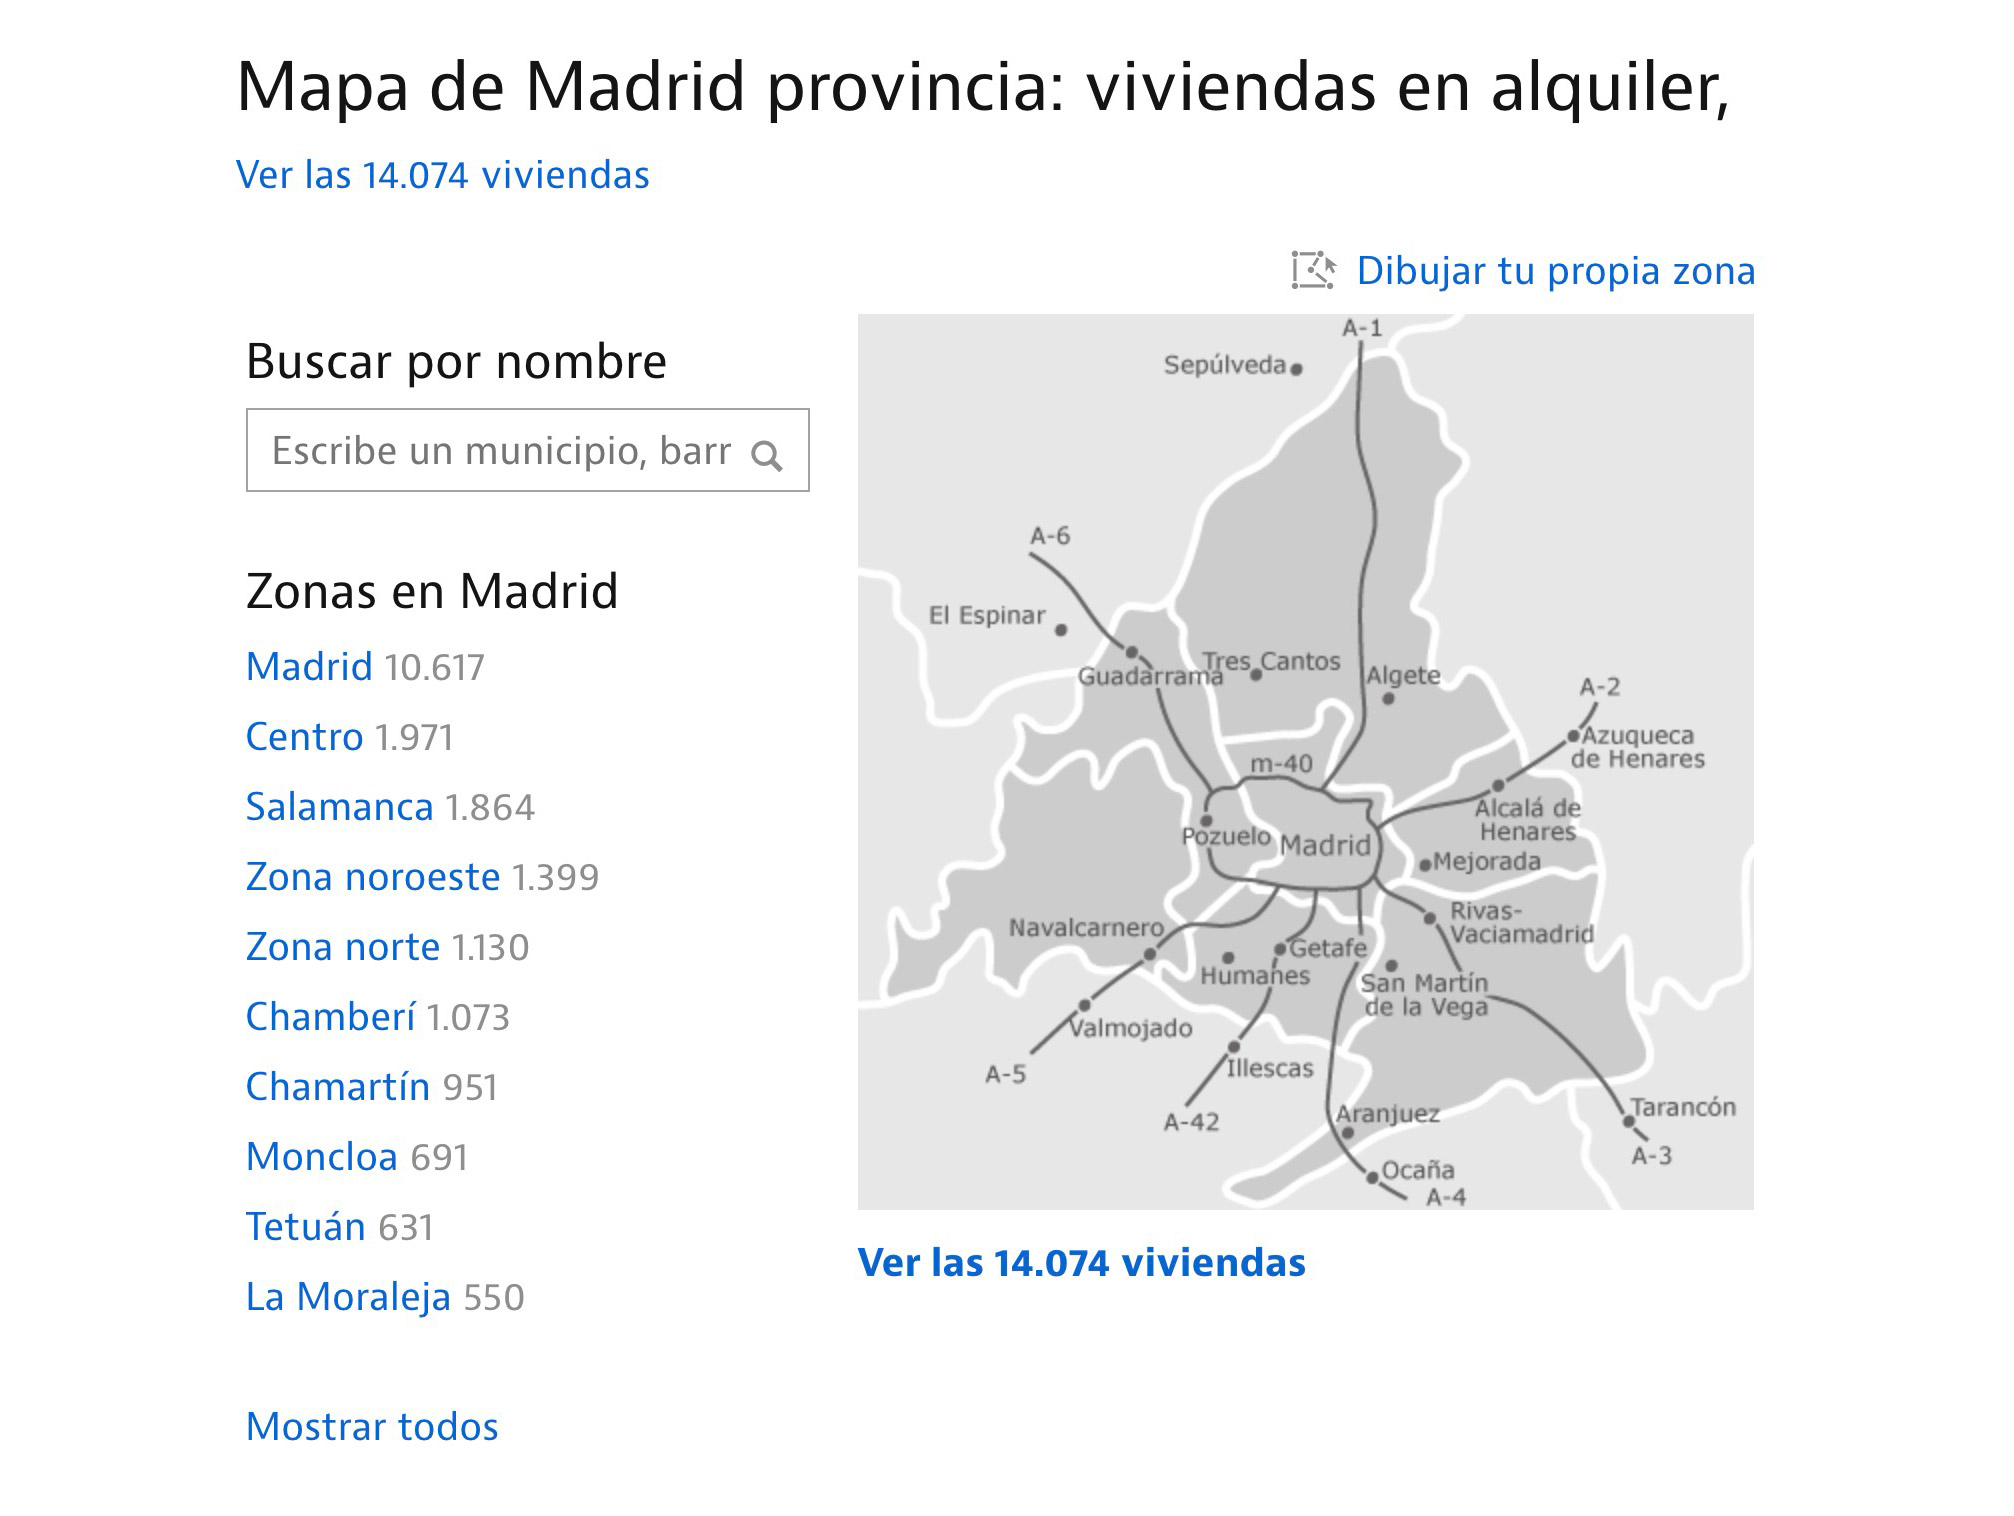 Сайт Idealista — самая удобная платформа для поиска жилья: можно искать по списку или по карте города